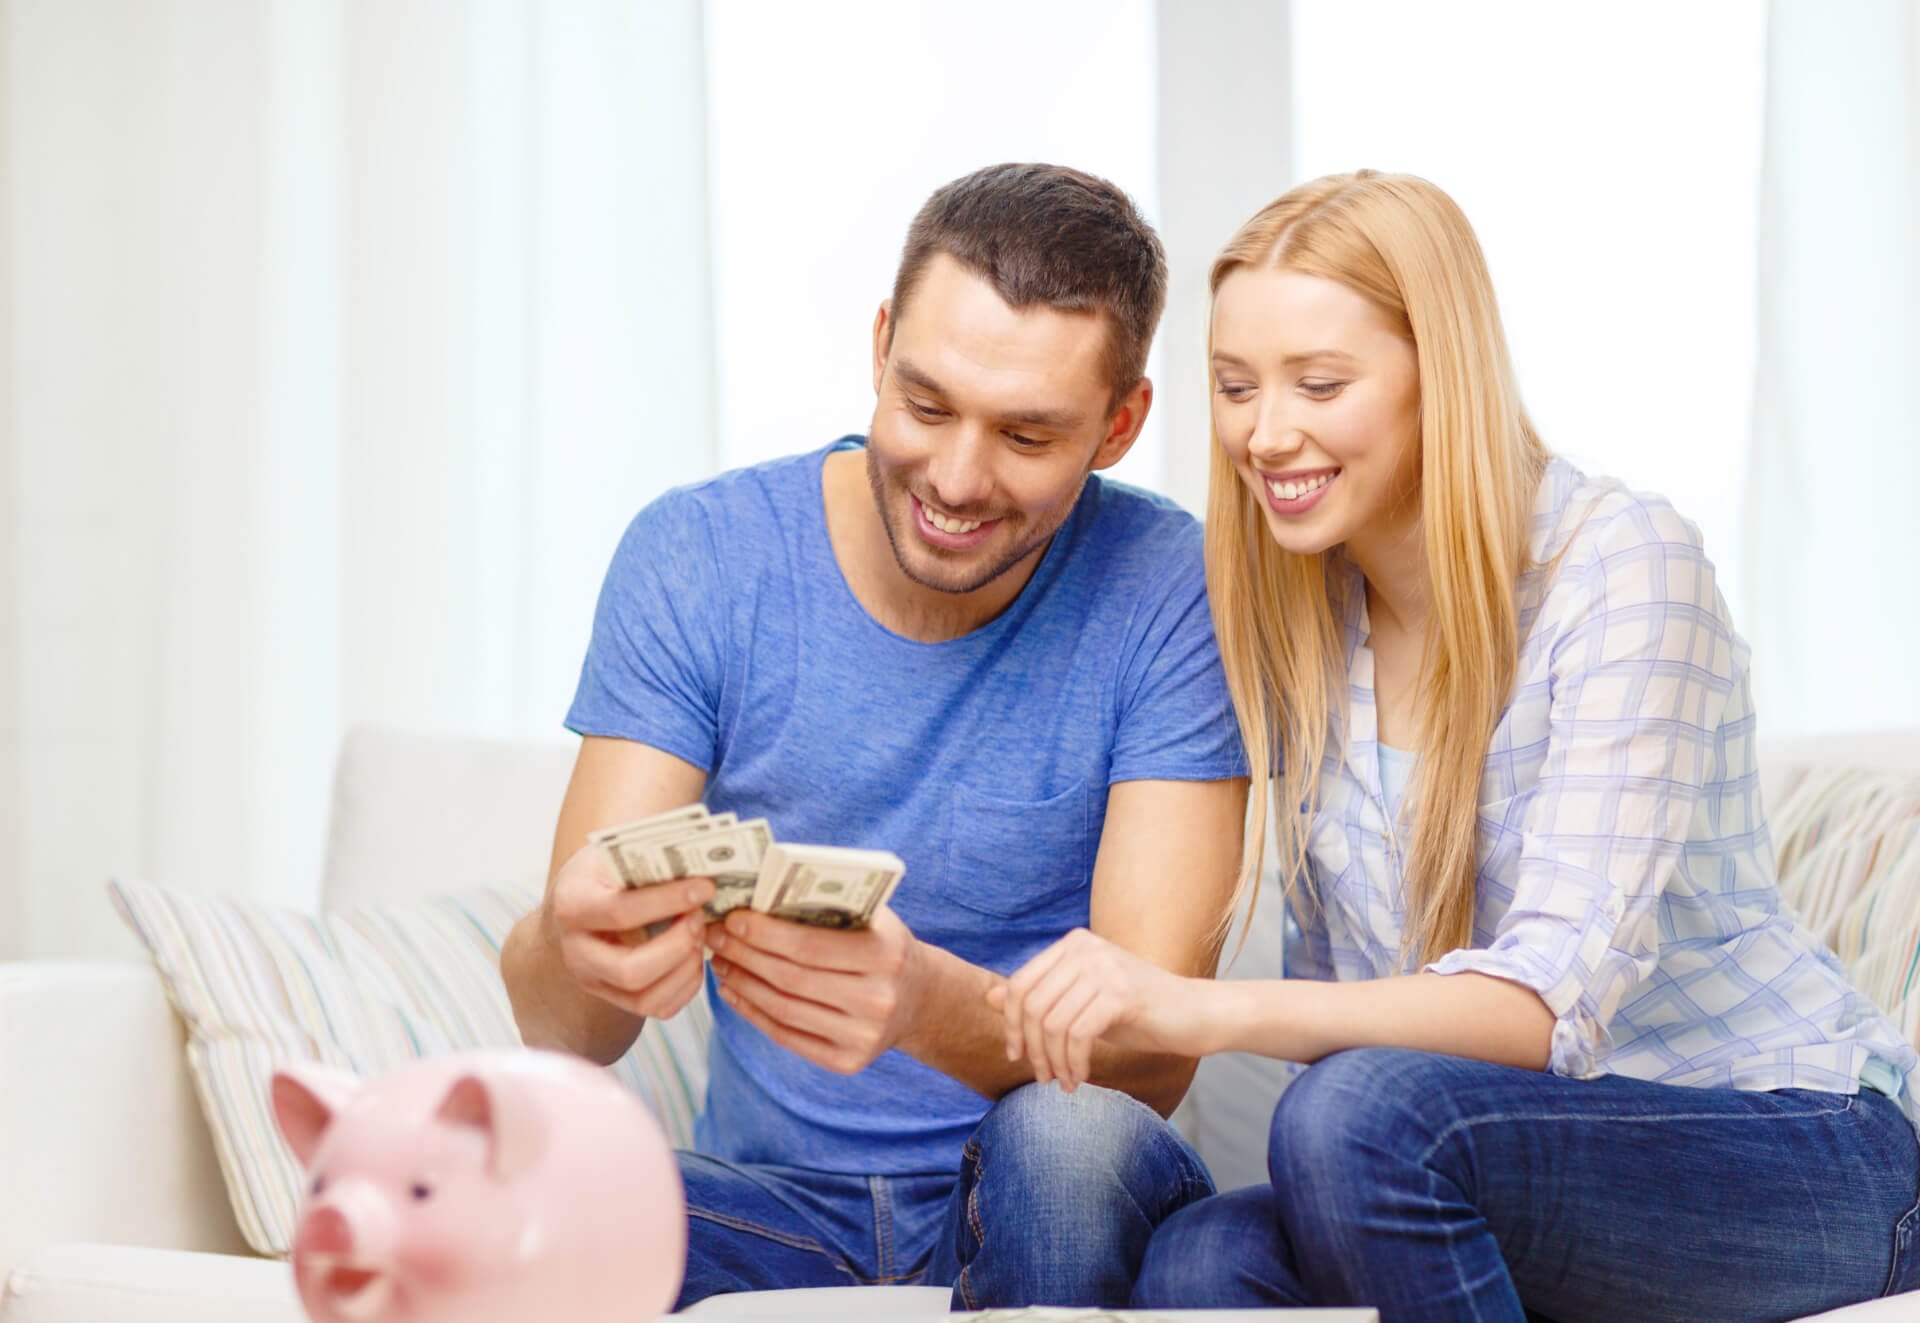 Ein Mann und eine Frau sitzen auf einem Sofa und zählen einen Bündel Geld, während ein Sparschwein auf einem Tisch vor ihnen steht. Symbolisch für die gesparte Summe durch steuerfreie Ausbildungen.